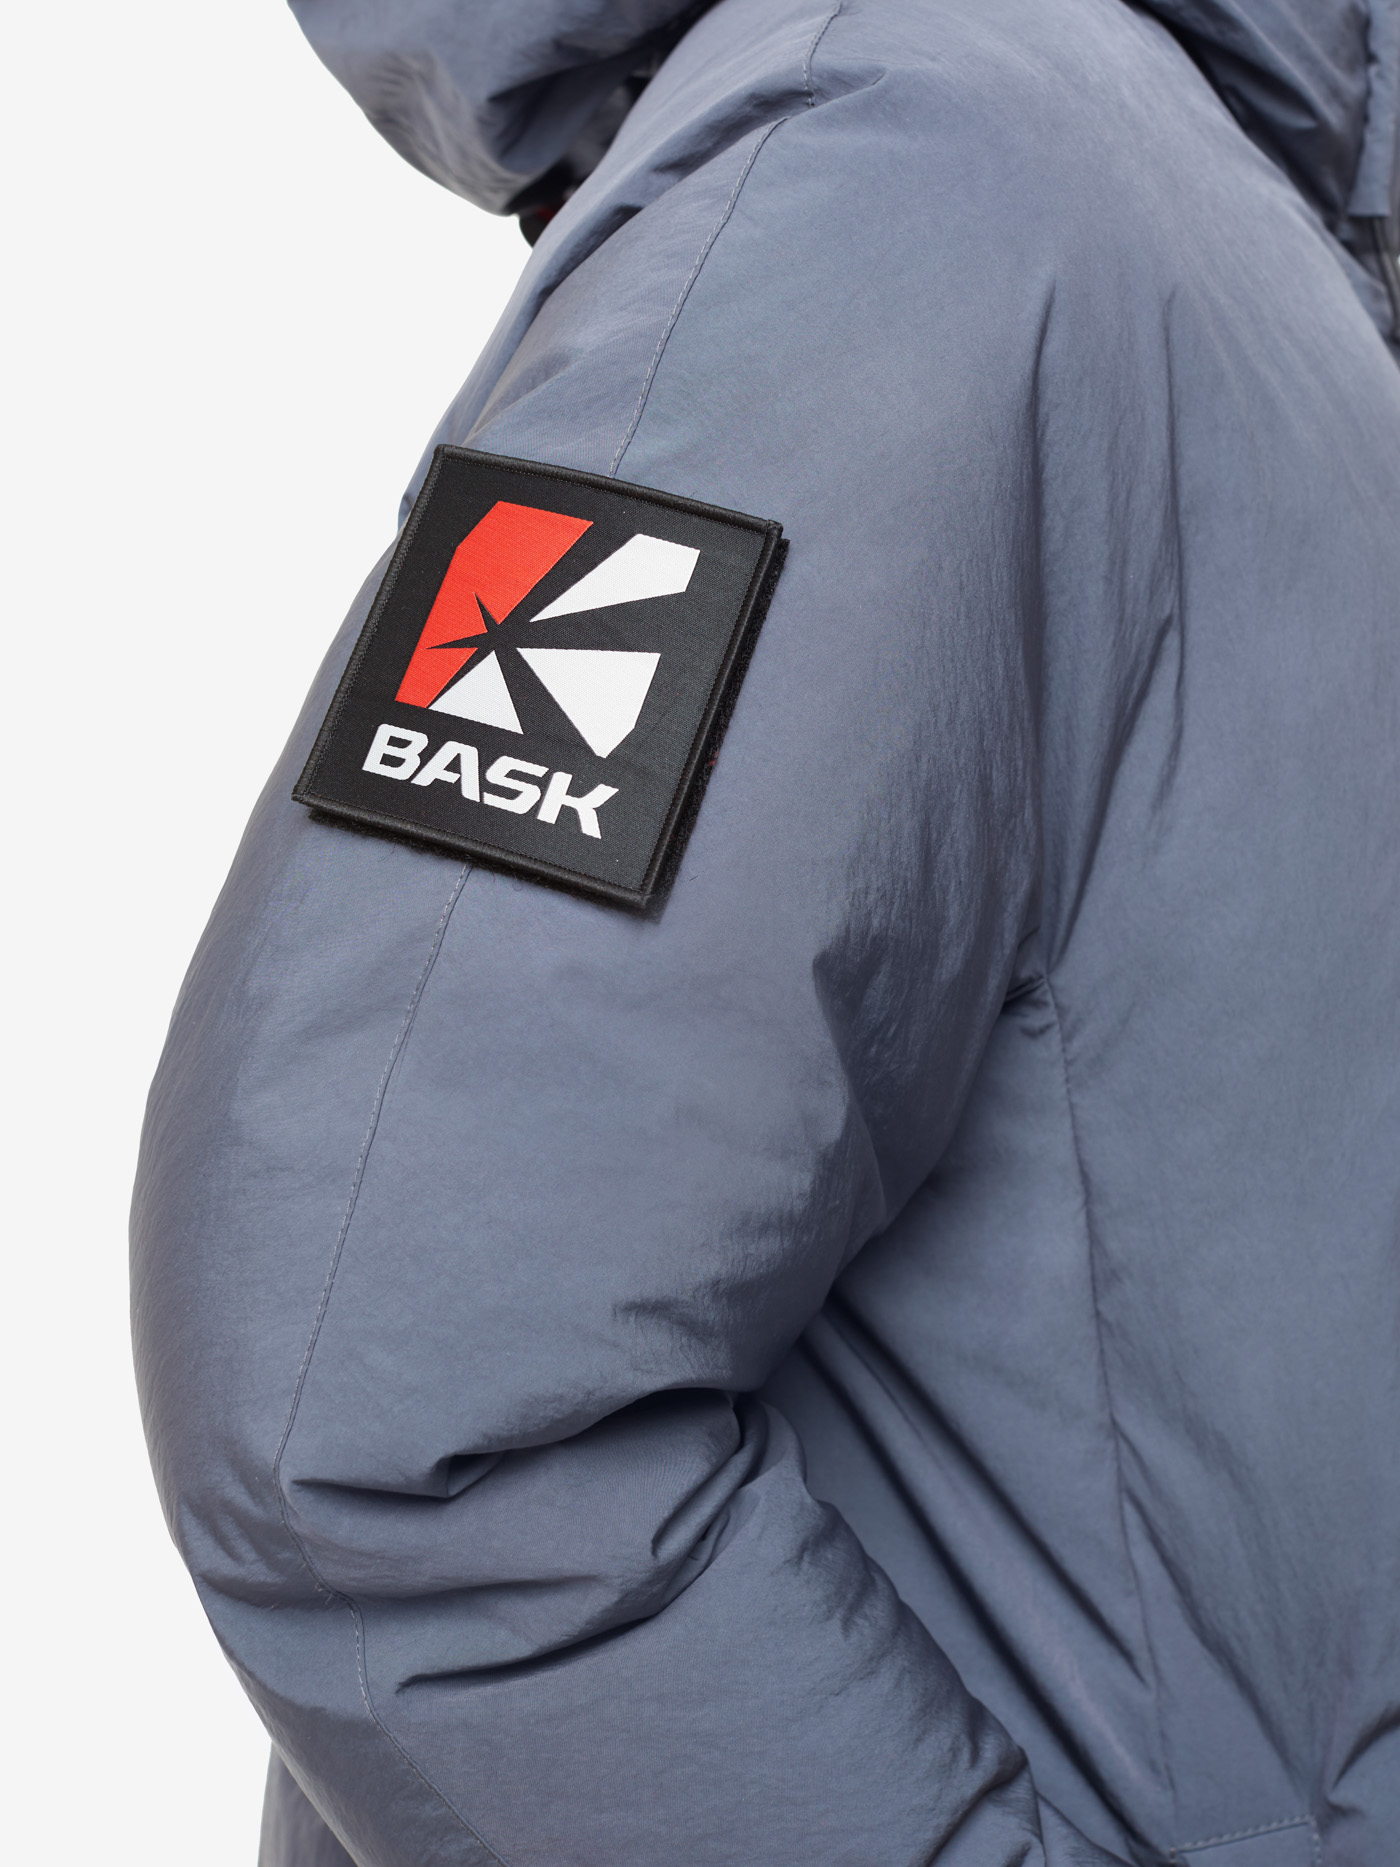 Пуховое пальто BASK, размер 46, цвет маренго 19H51-9675-046 YANA - фото 6